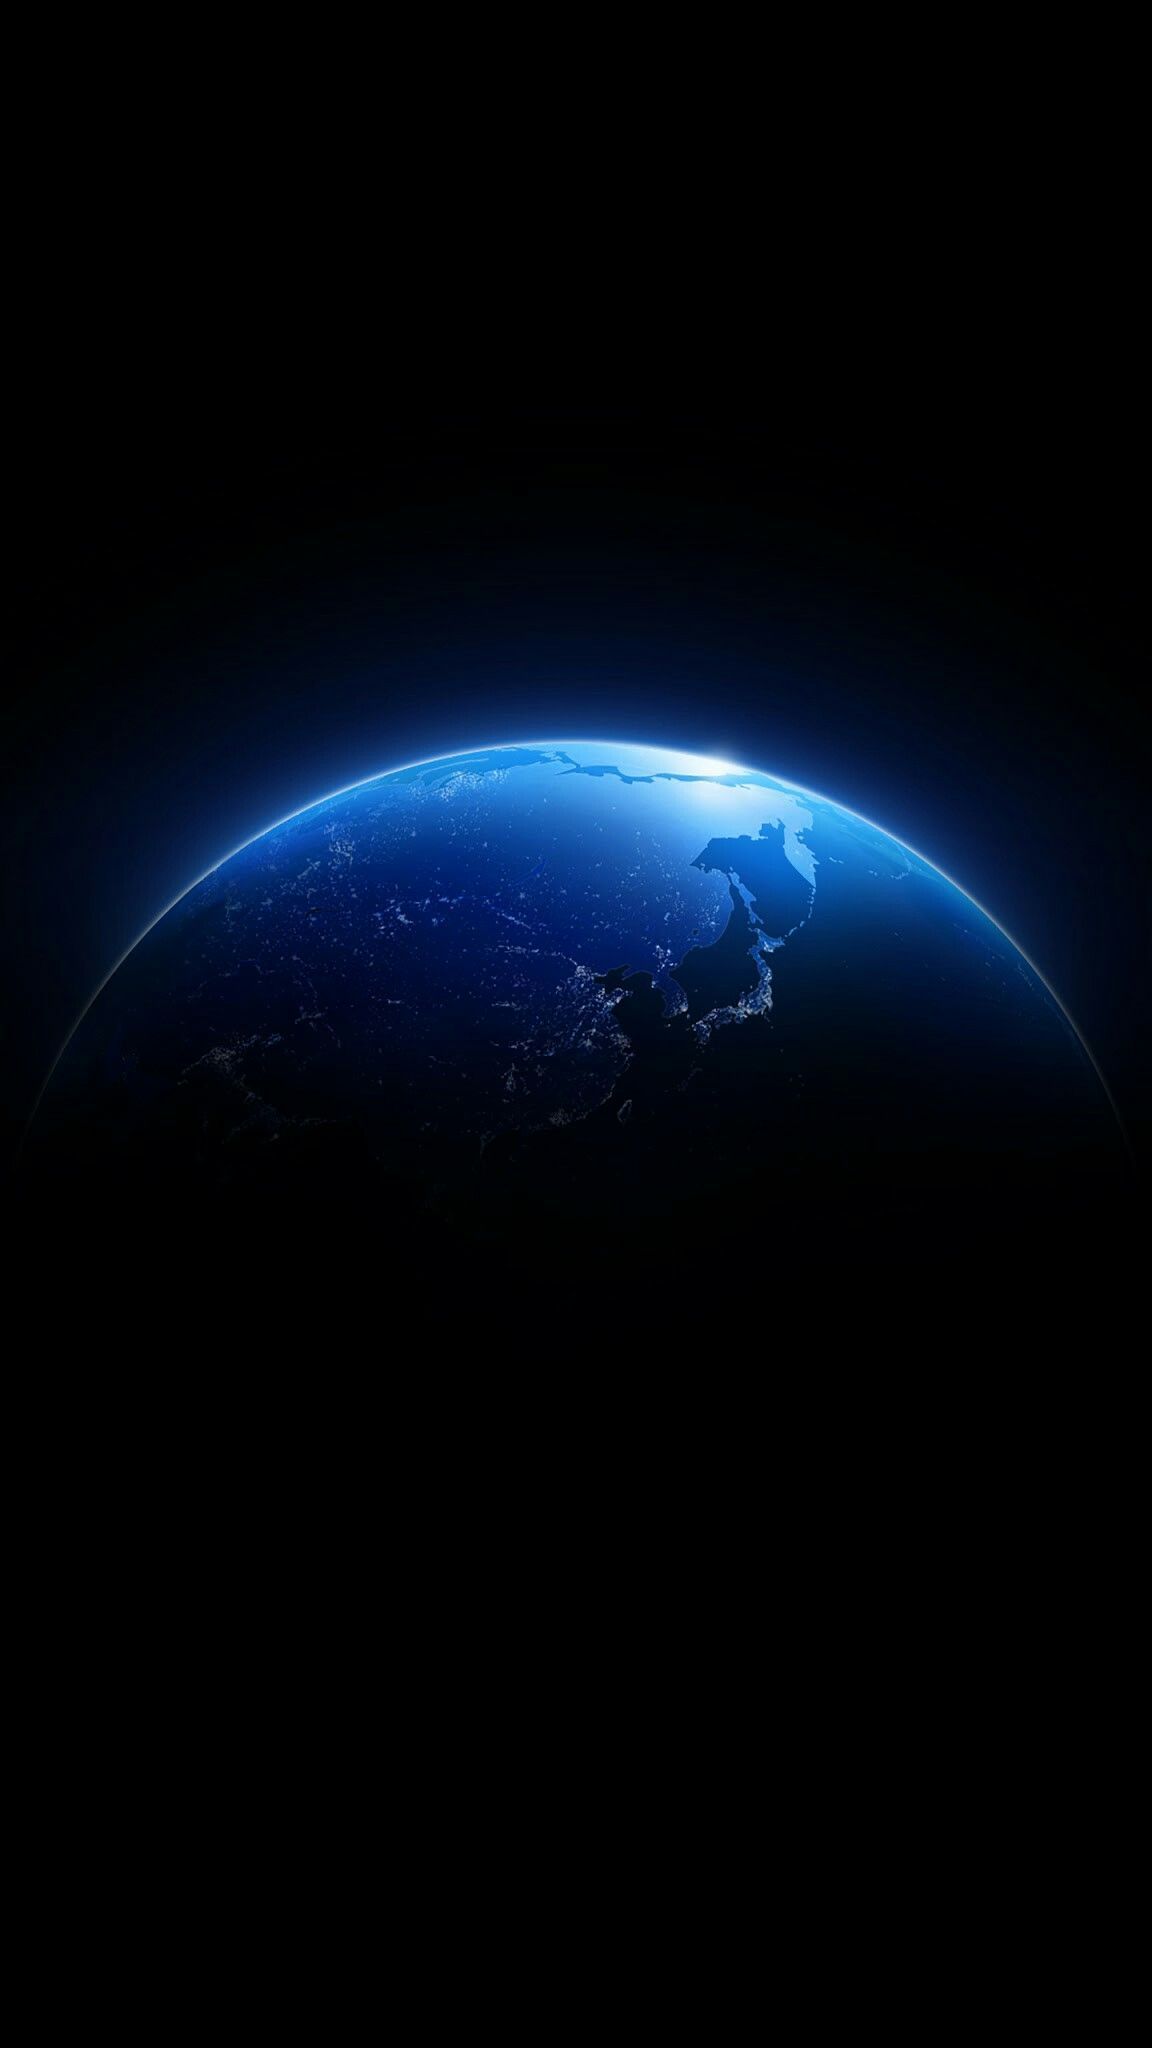 Blue Globe in Space Wallpaper. Wallpaper earth, Wallpaper space, Sci fi wallpaper